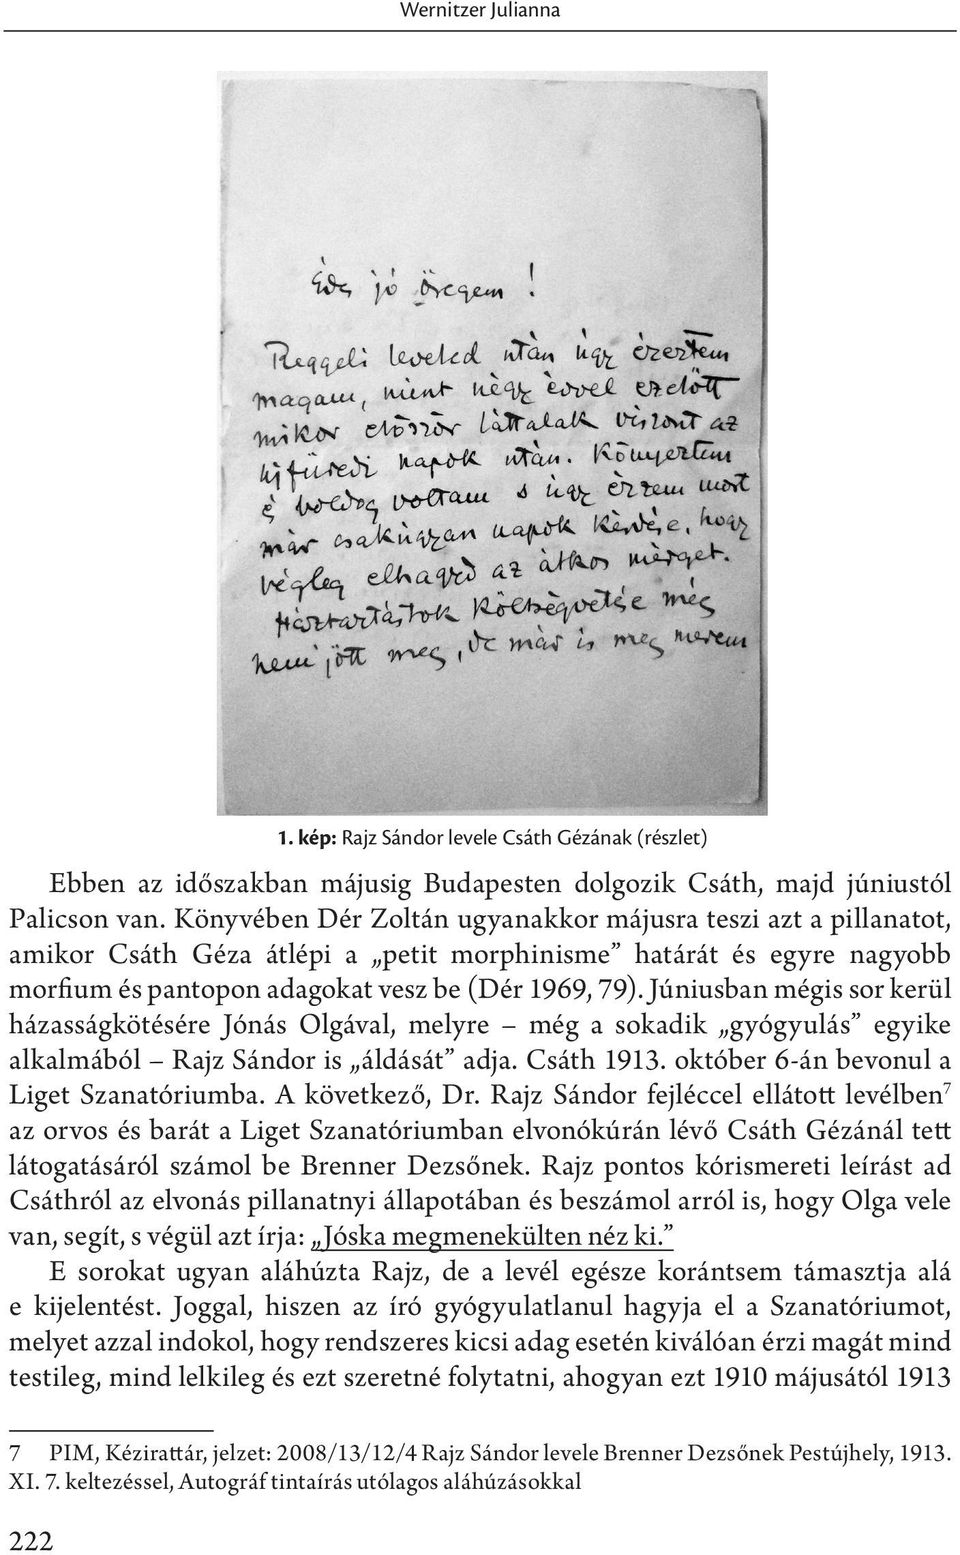 Júniusban mégis sor kerül házasságkötésére Jónás Olgával, melyre még a sokadik gyógyulás egyike alkalmából Rajz Sándor is áldását adja. Csáth 1913. október 6-án bevonul a Liget Szanatóriumba.